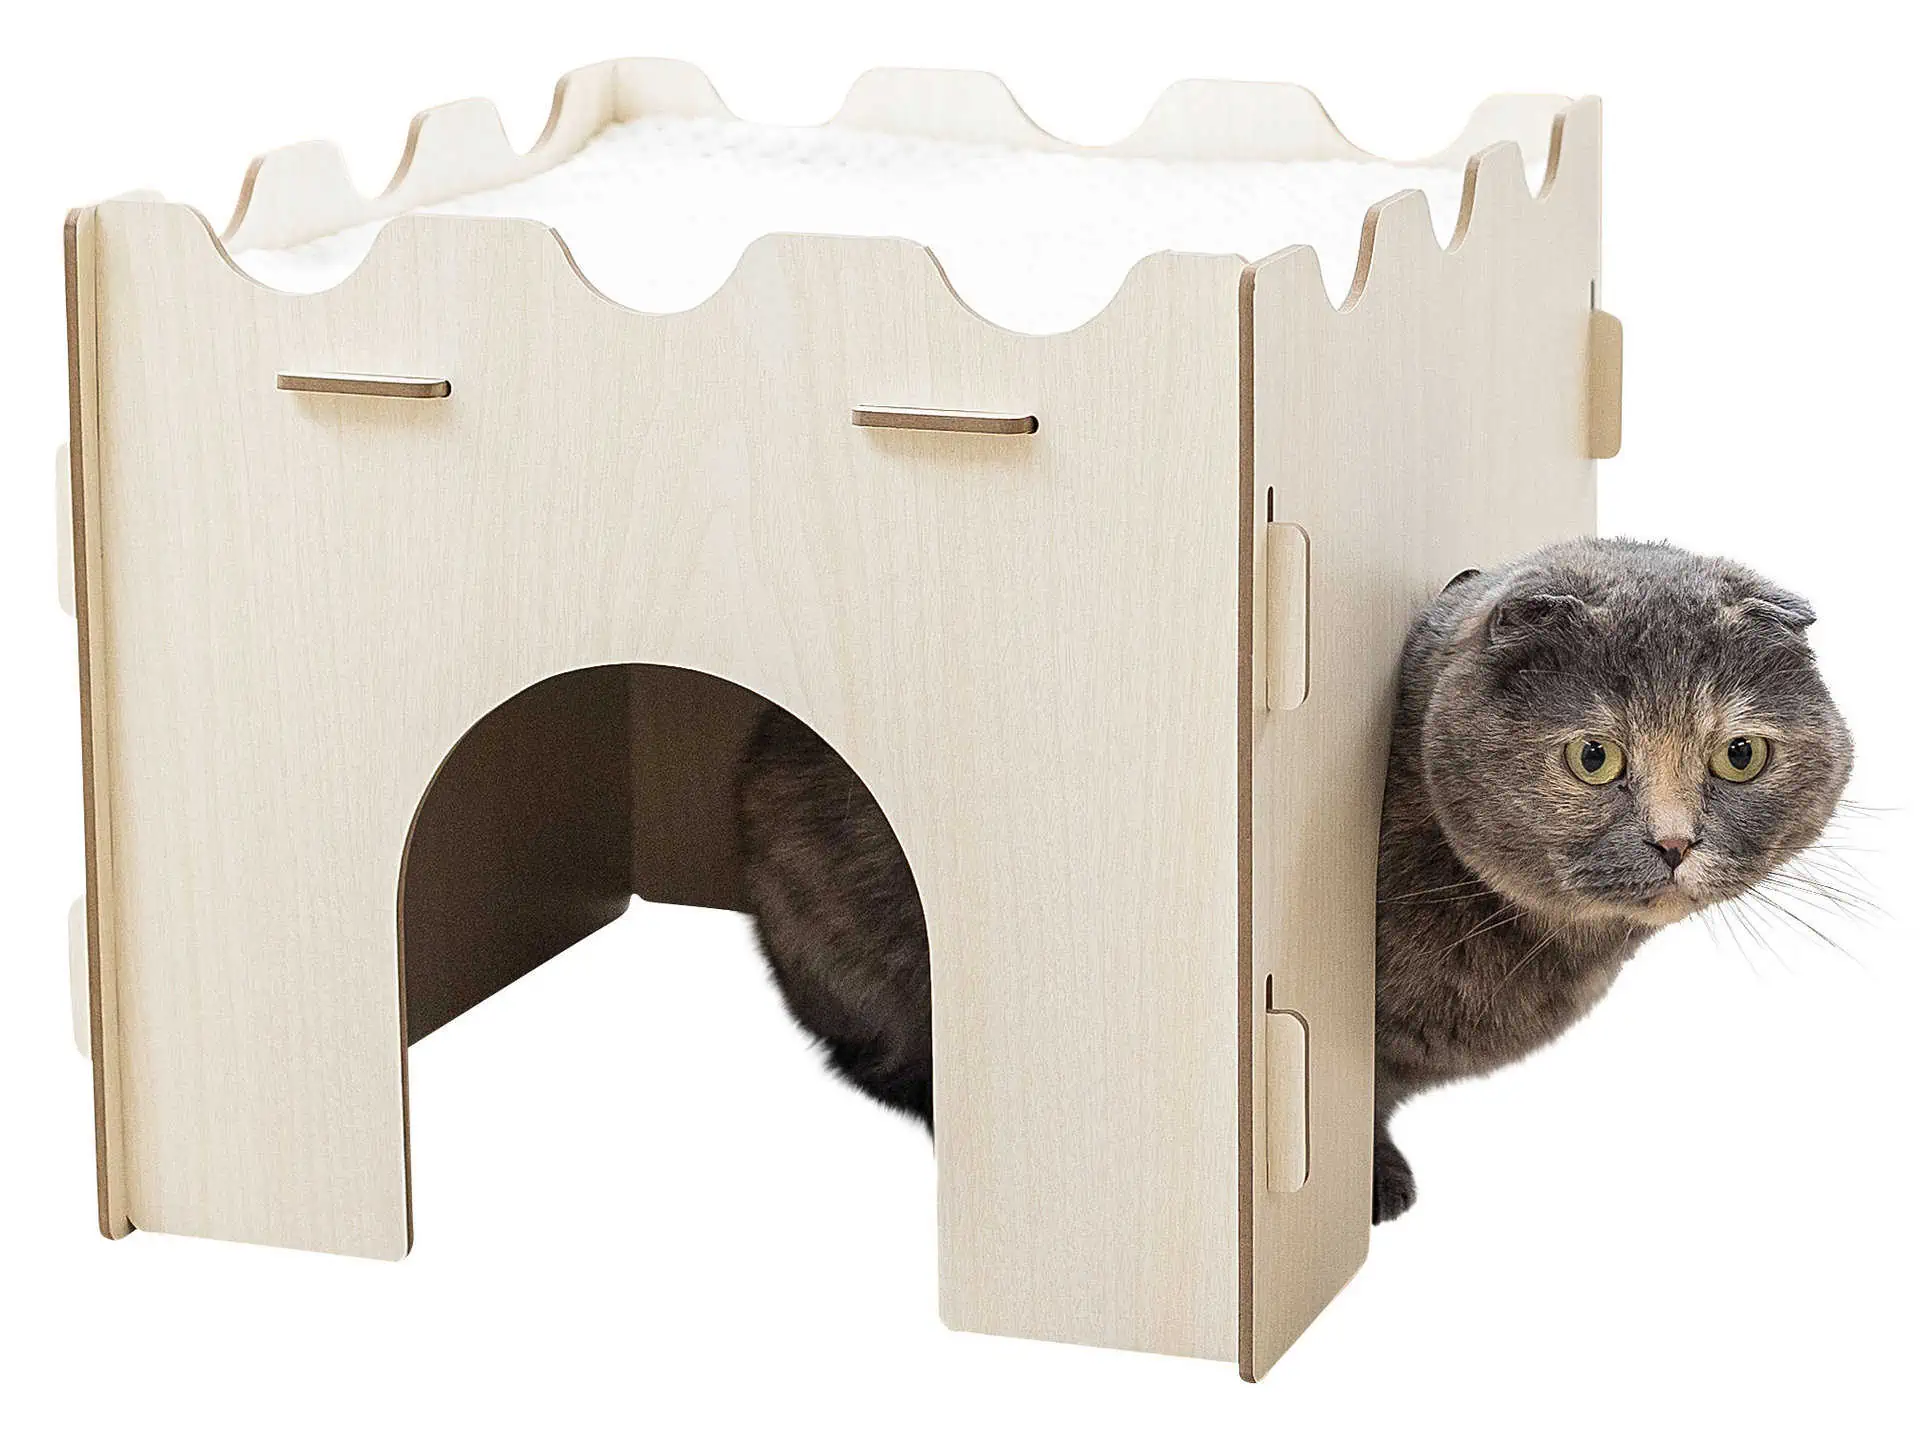 Zgârietor pentru pisici de interior Katzenburg 37x37x30 cm cu pernă